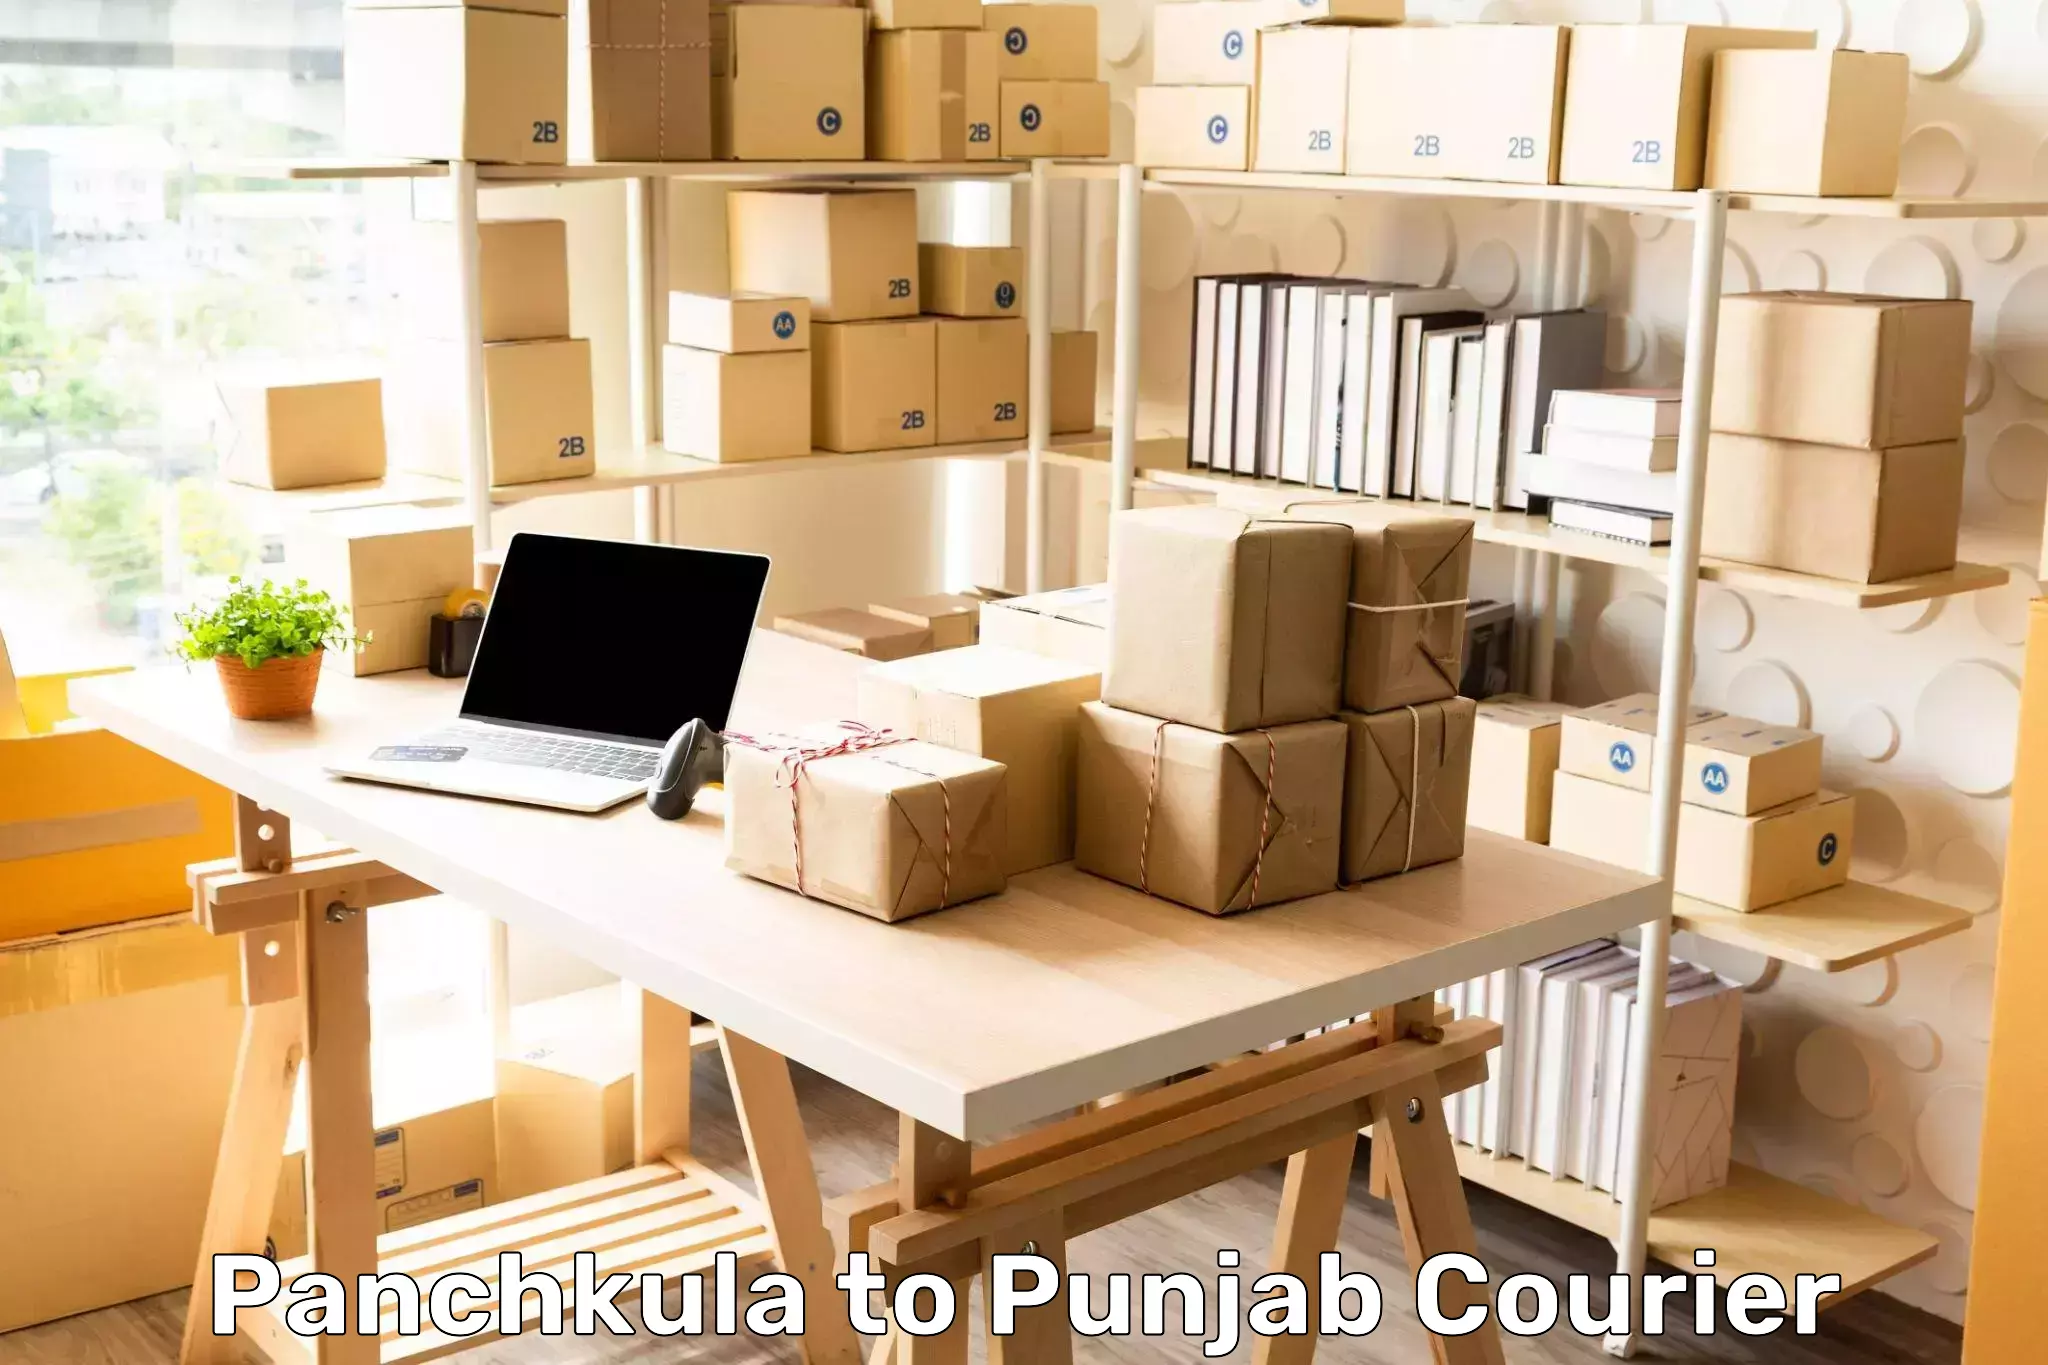 International courier rates Panchkula to Punjab